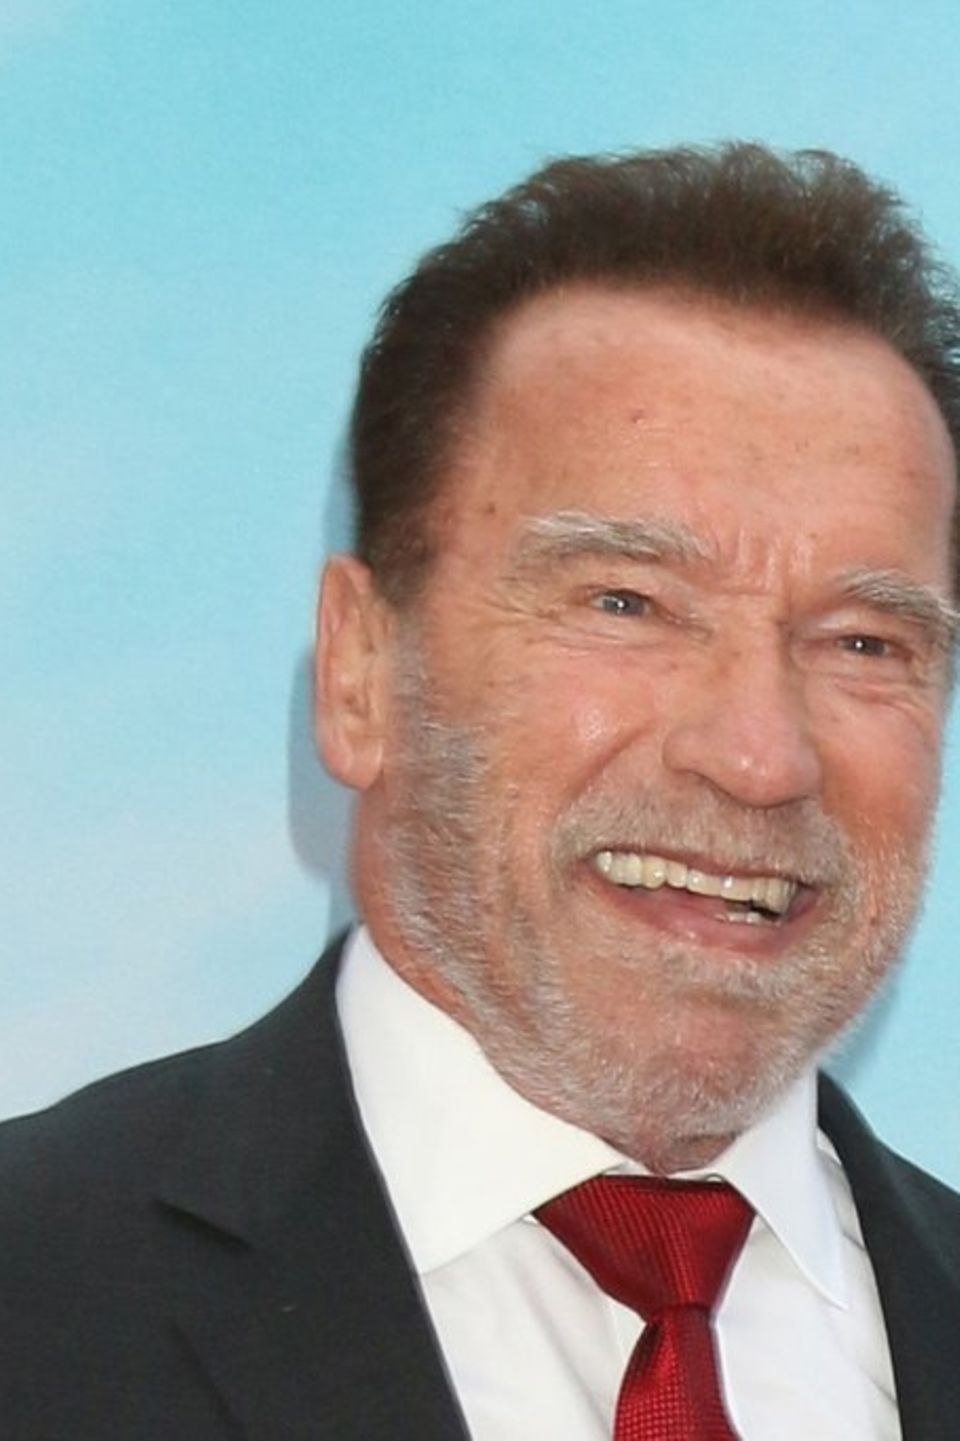 Arnold Schwarzenegger hat fünf Kinder und zwei Enkel. Er hält seine drastische Erziehung für durchaus effektiv.